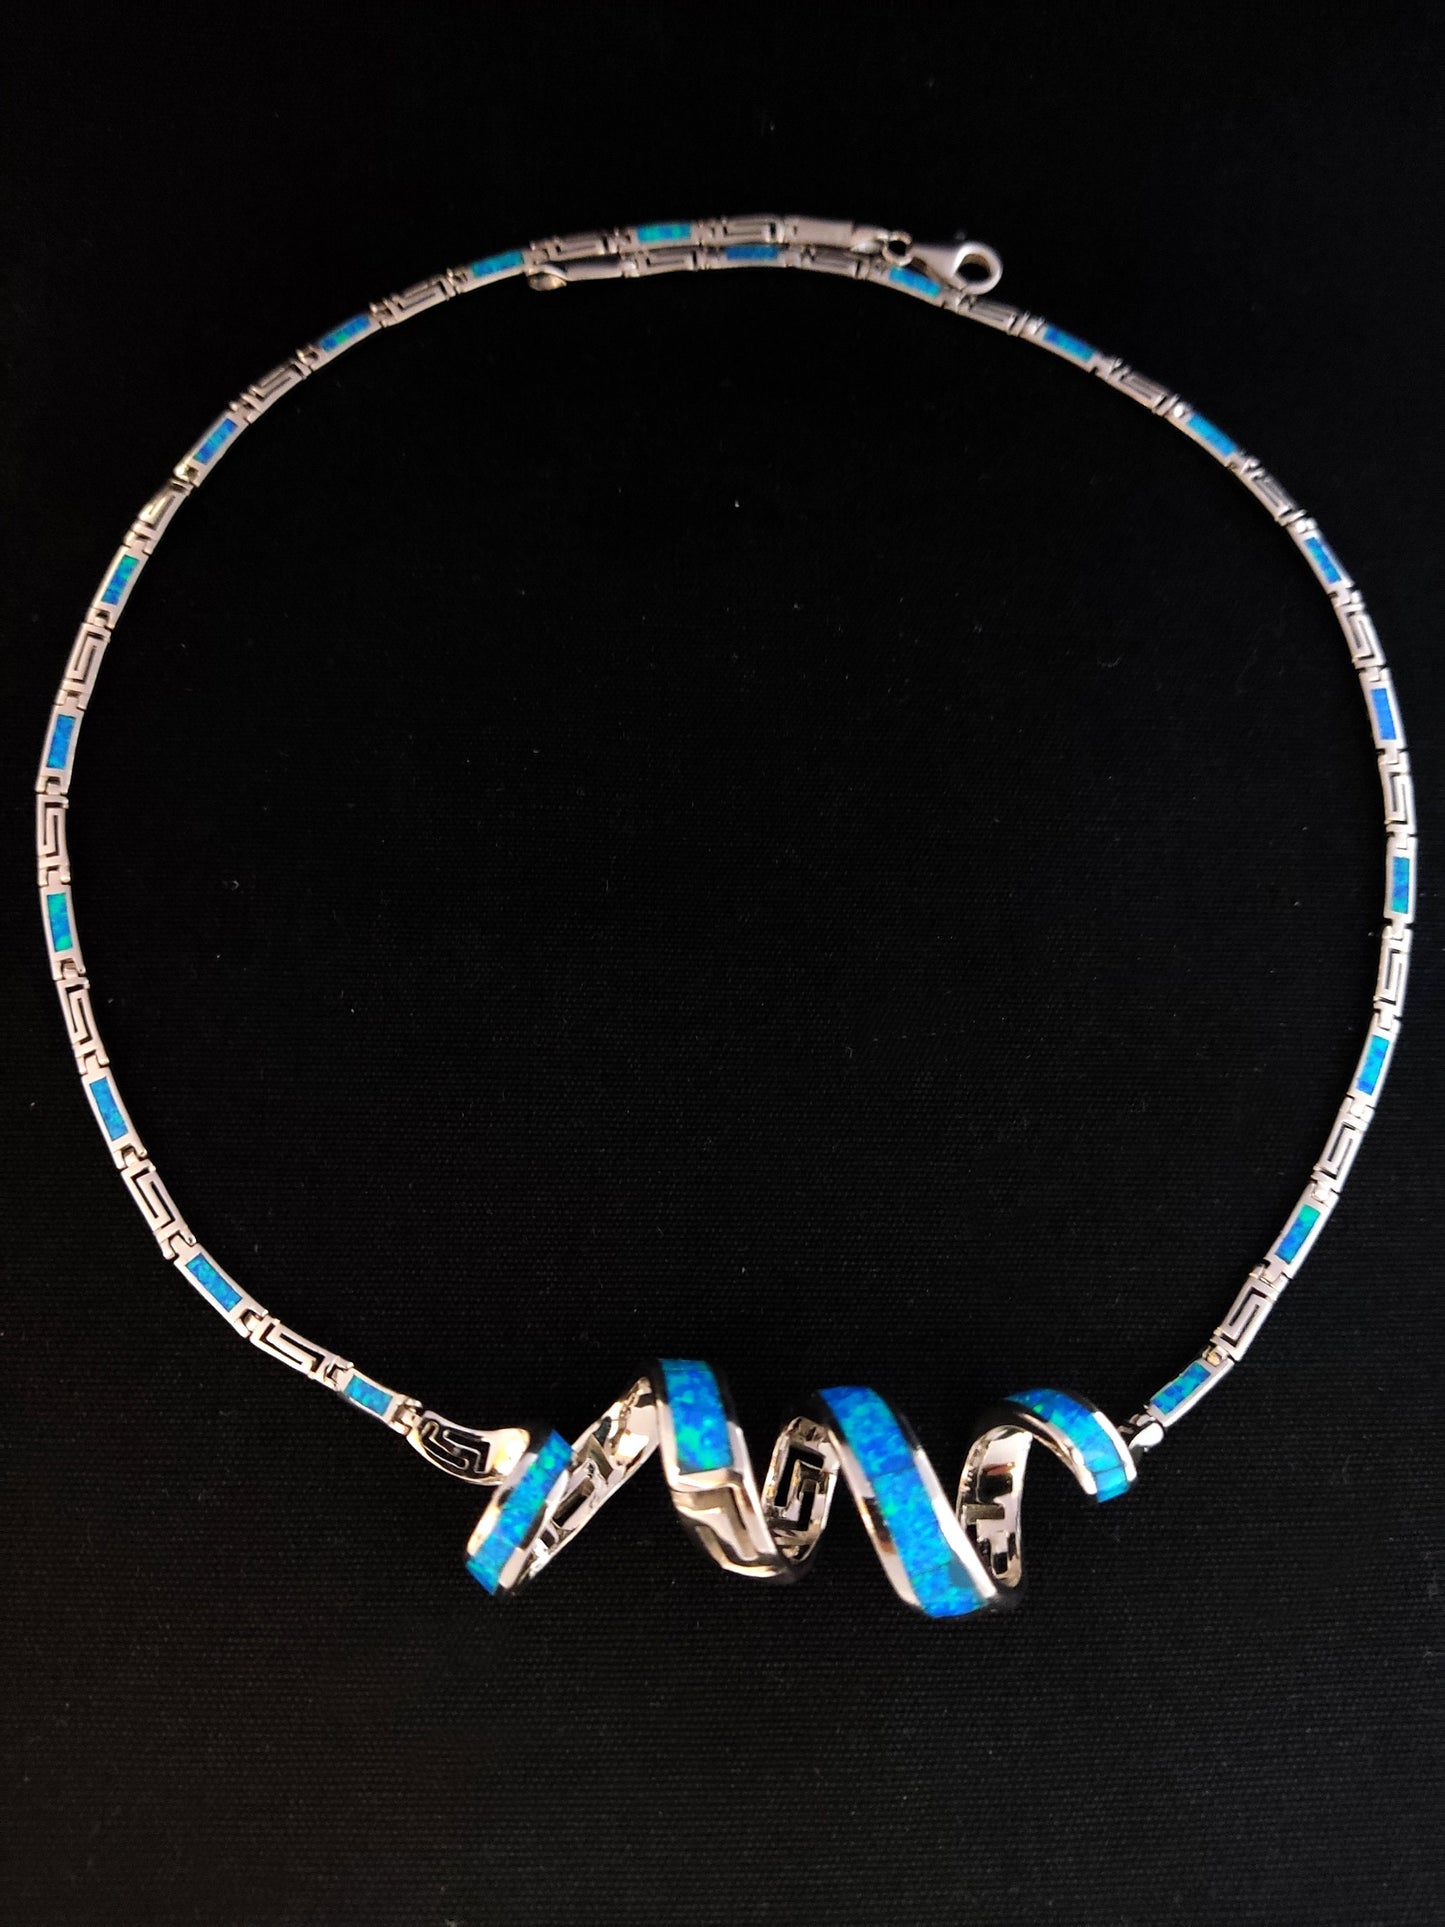 Collier d'opale grecque en argent, collier virevoltant de méandre de clé grecque d'opale bleue, Griechischer Opal Silber Kette, Bijoux Grecque, bijoux grecs